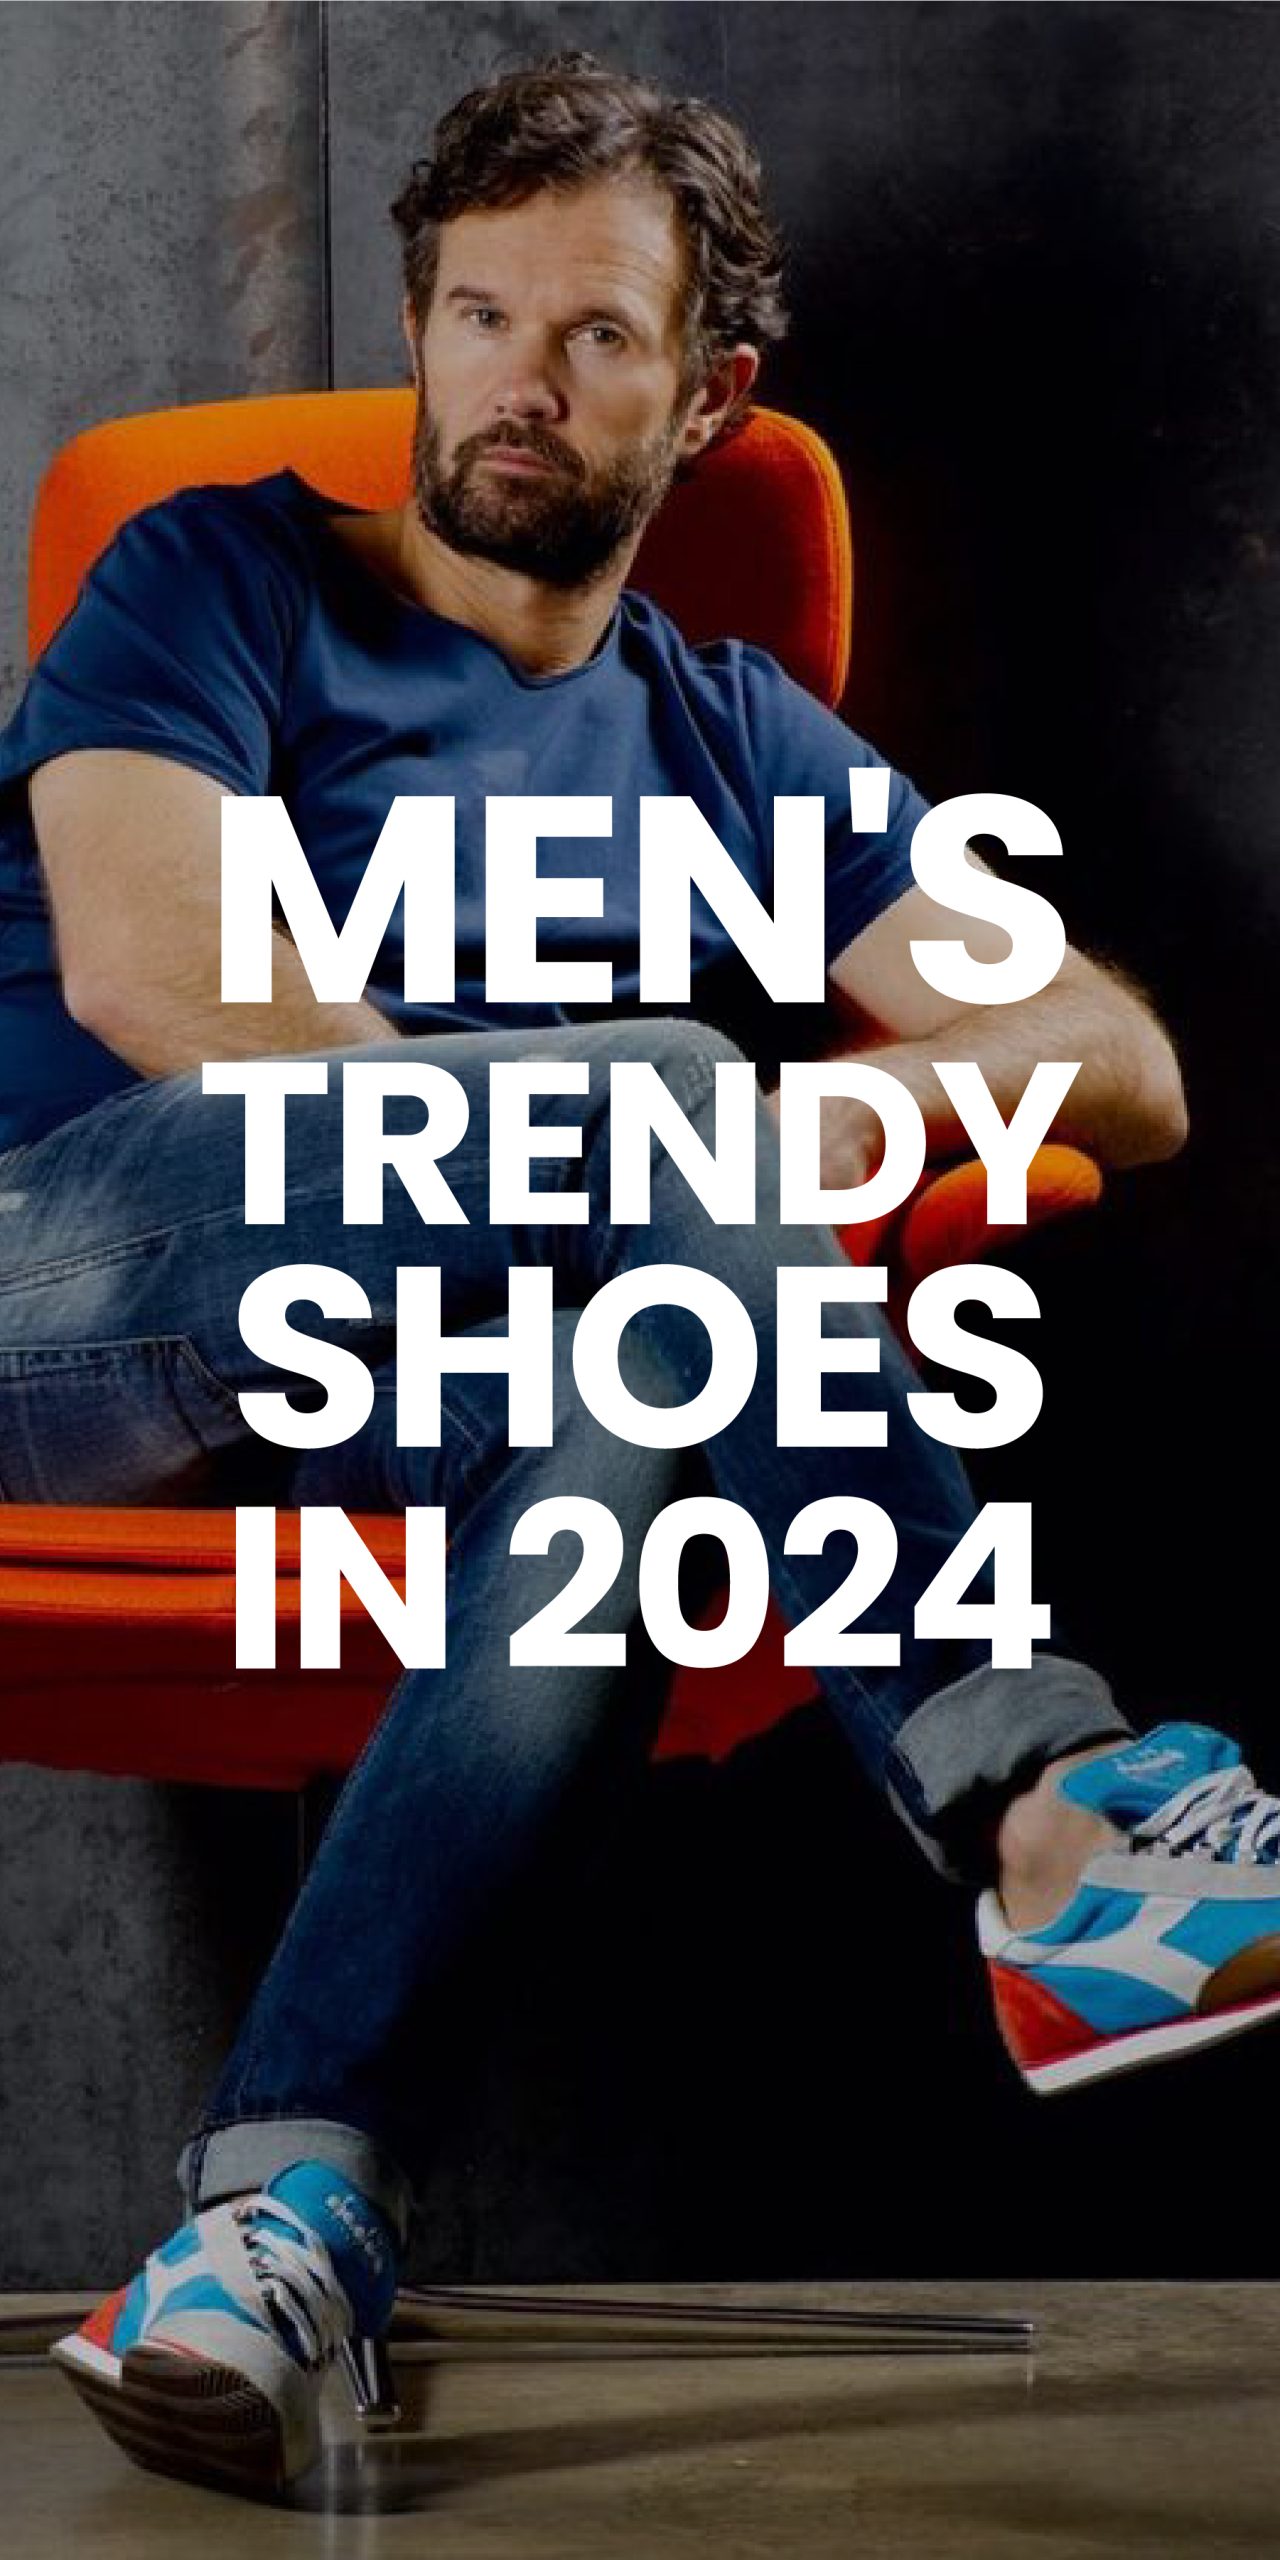 MEN’S TRENDY SHOES IN 2024